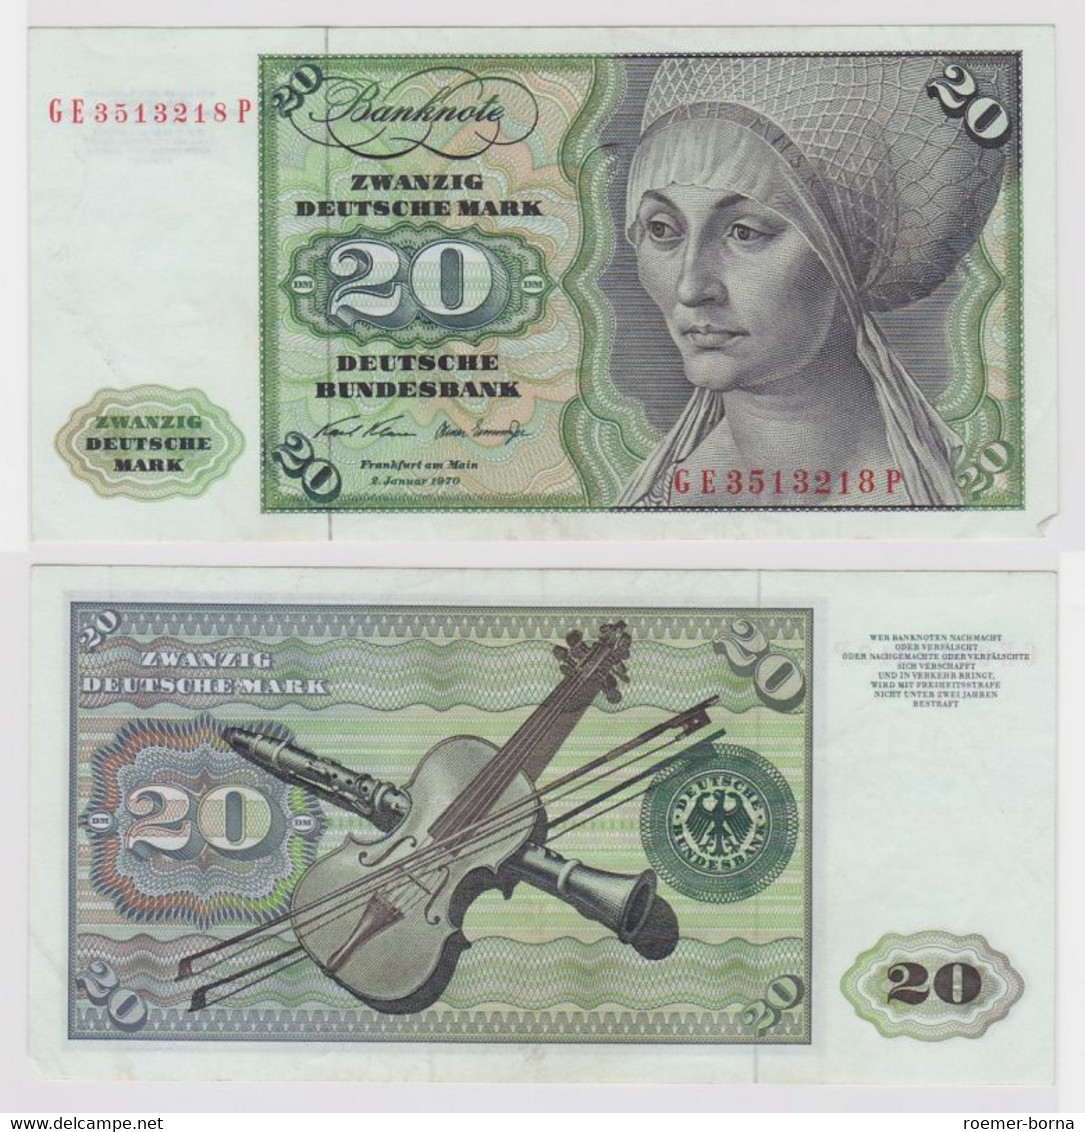 T112860 Banknote 20 DM Deutsche Mark Ro. 271b Schein 2.Jan. 1970 KN GE 3513218 P - 20 Deutsche Mark